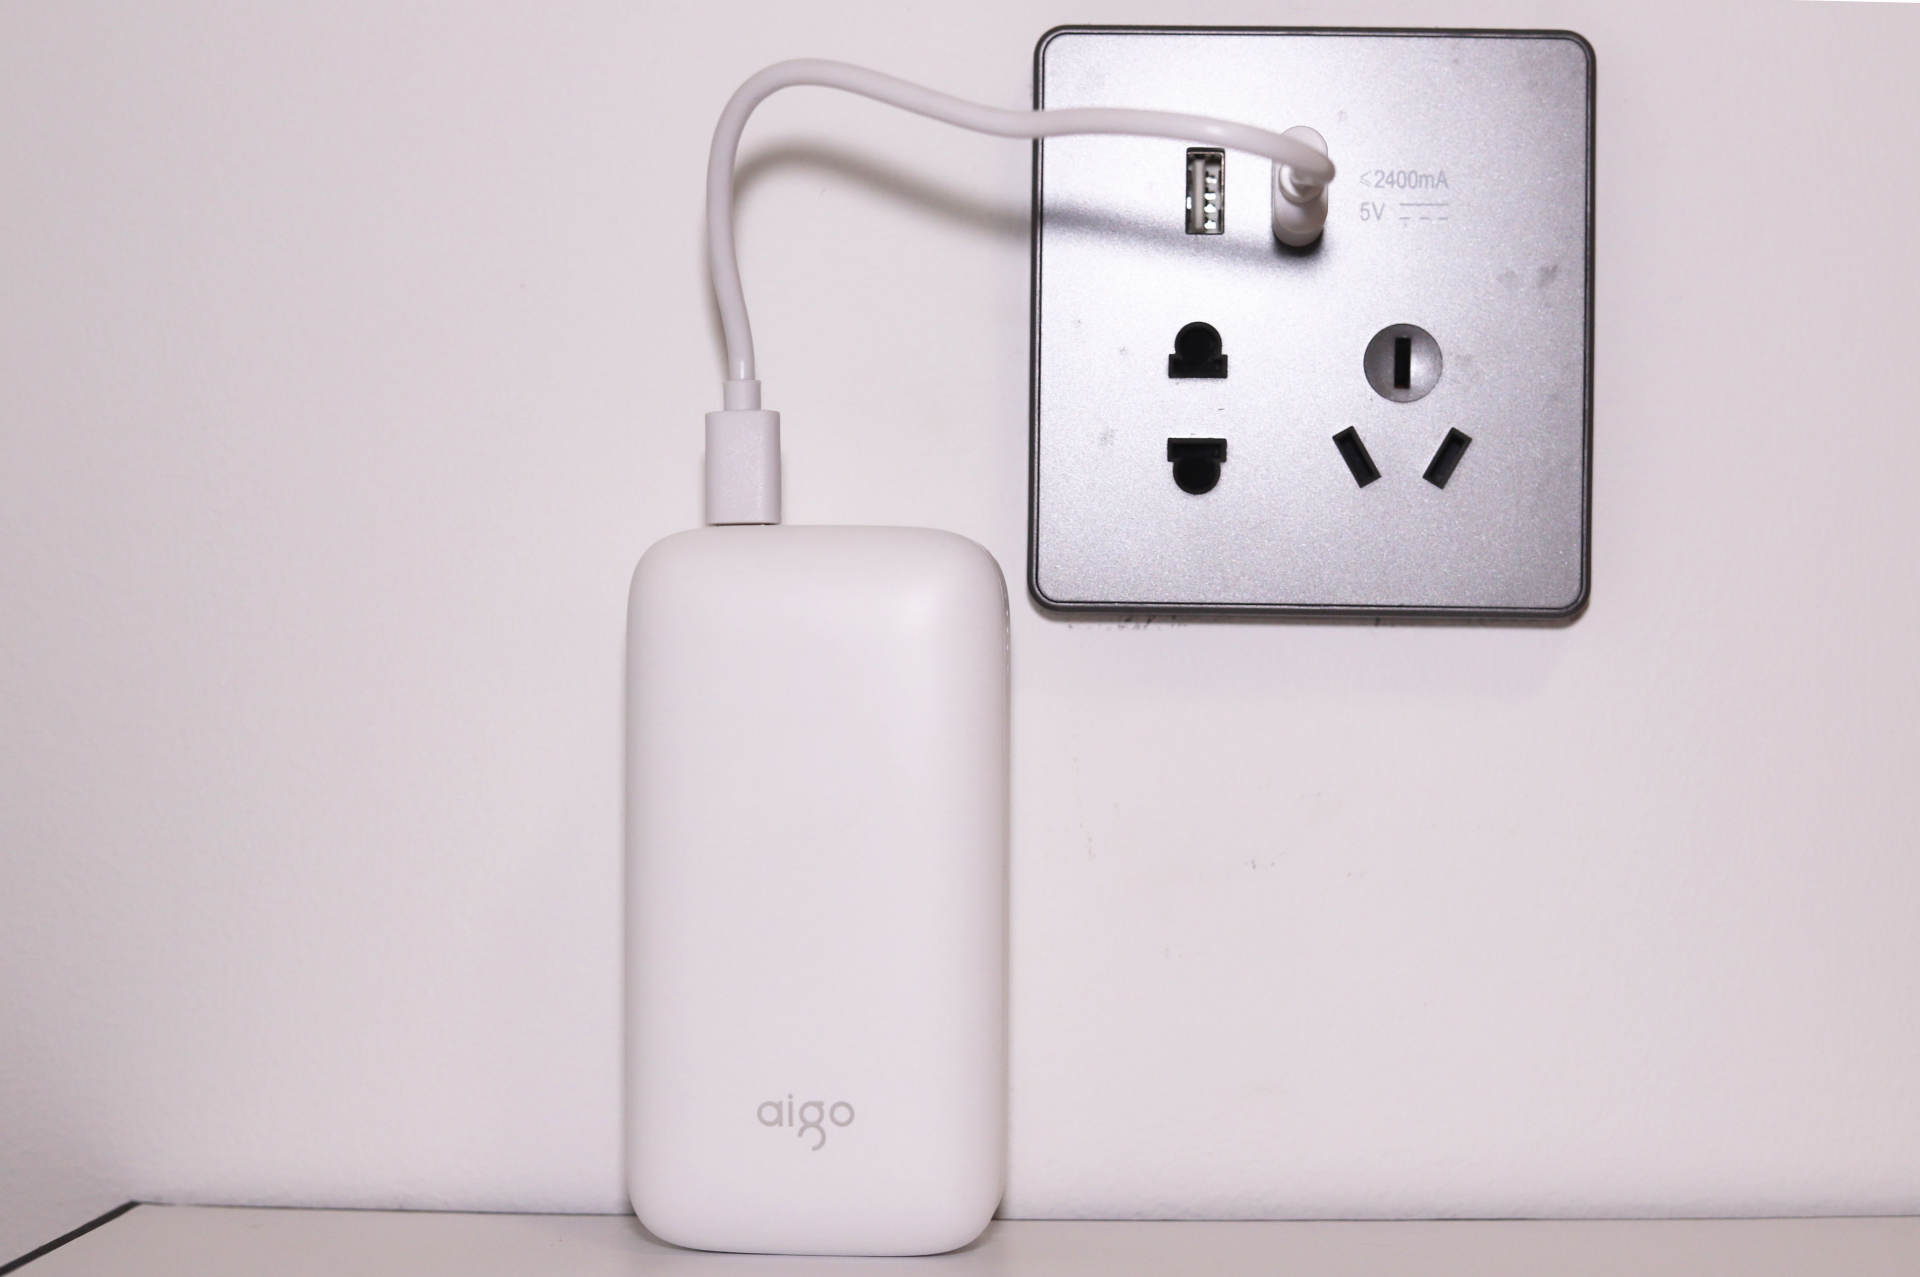 爱国者aigo X10P充电宝使用报告:小巧光滑如肥皂,双向快充瞬间补电